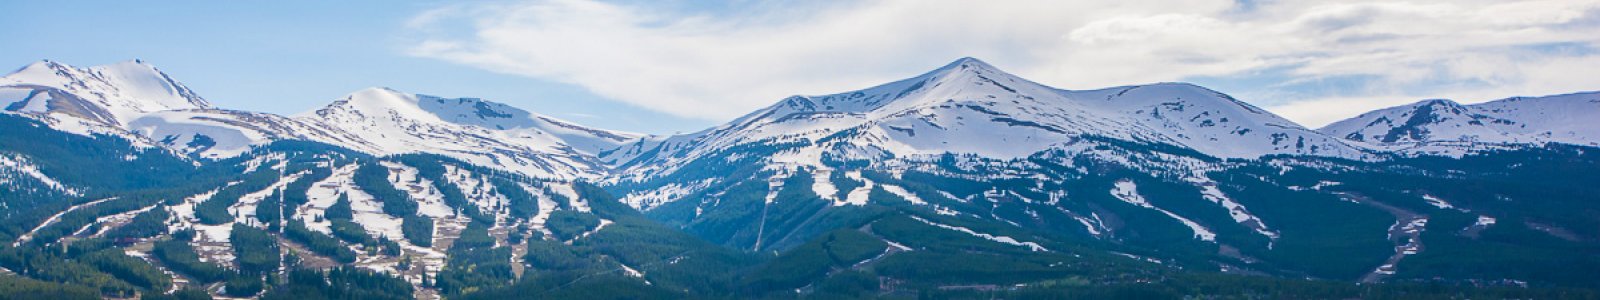 Snowmass Village Vacation Rentals | Colorado Vacation Homes & Condos